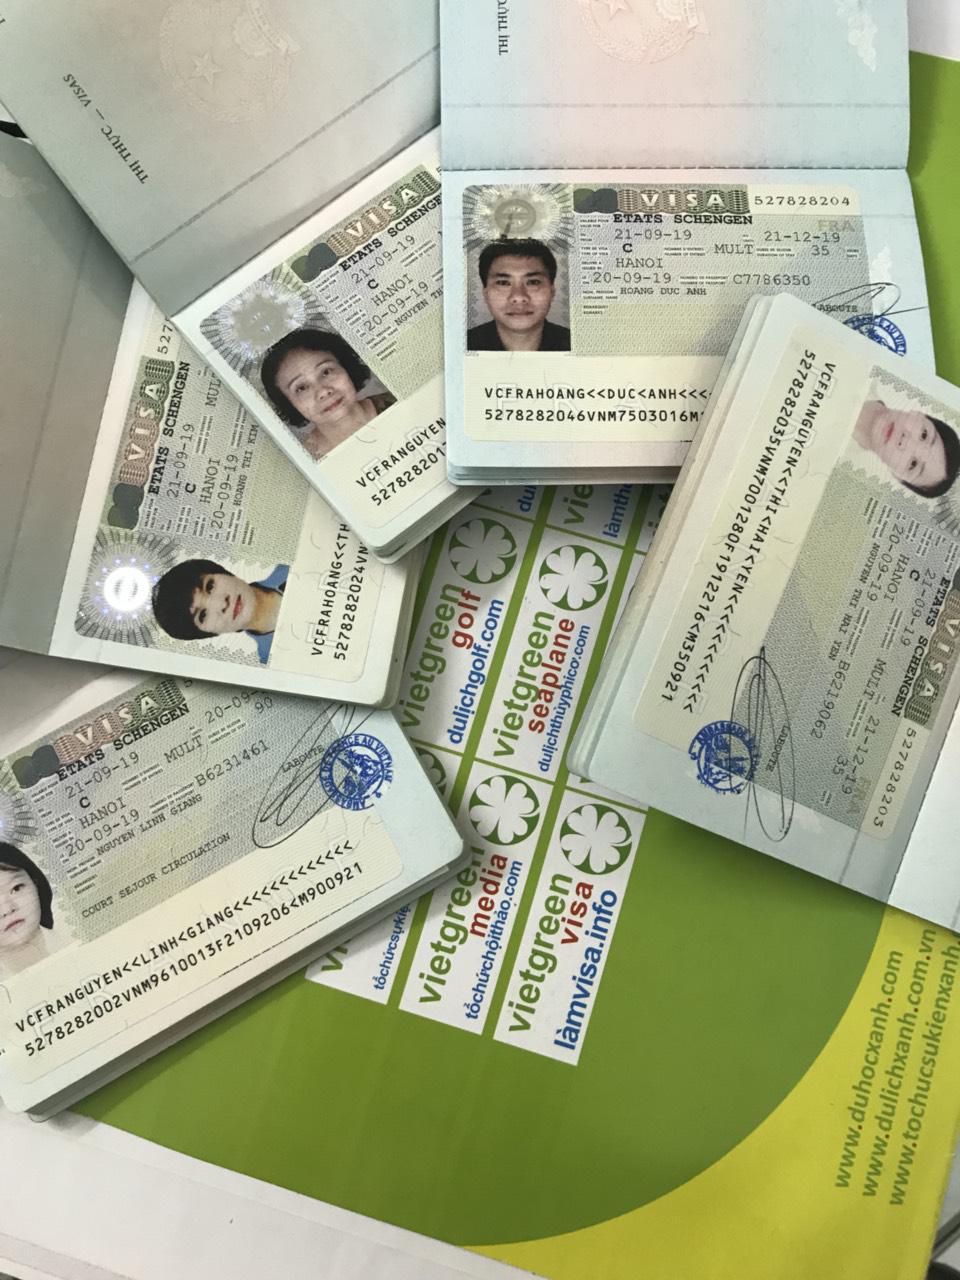 Dịch vụ nộp hồ sơ - tư vấn visa Hy Lạp Thứ 7 cuối tuần